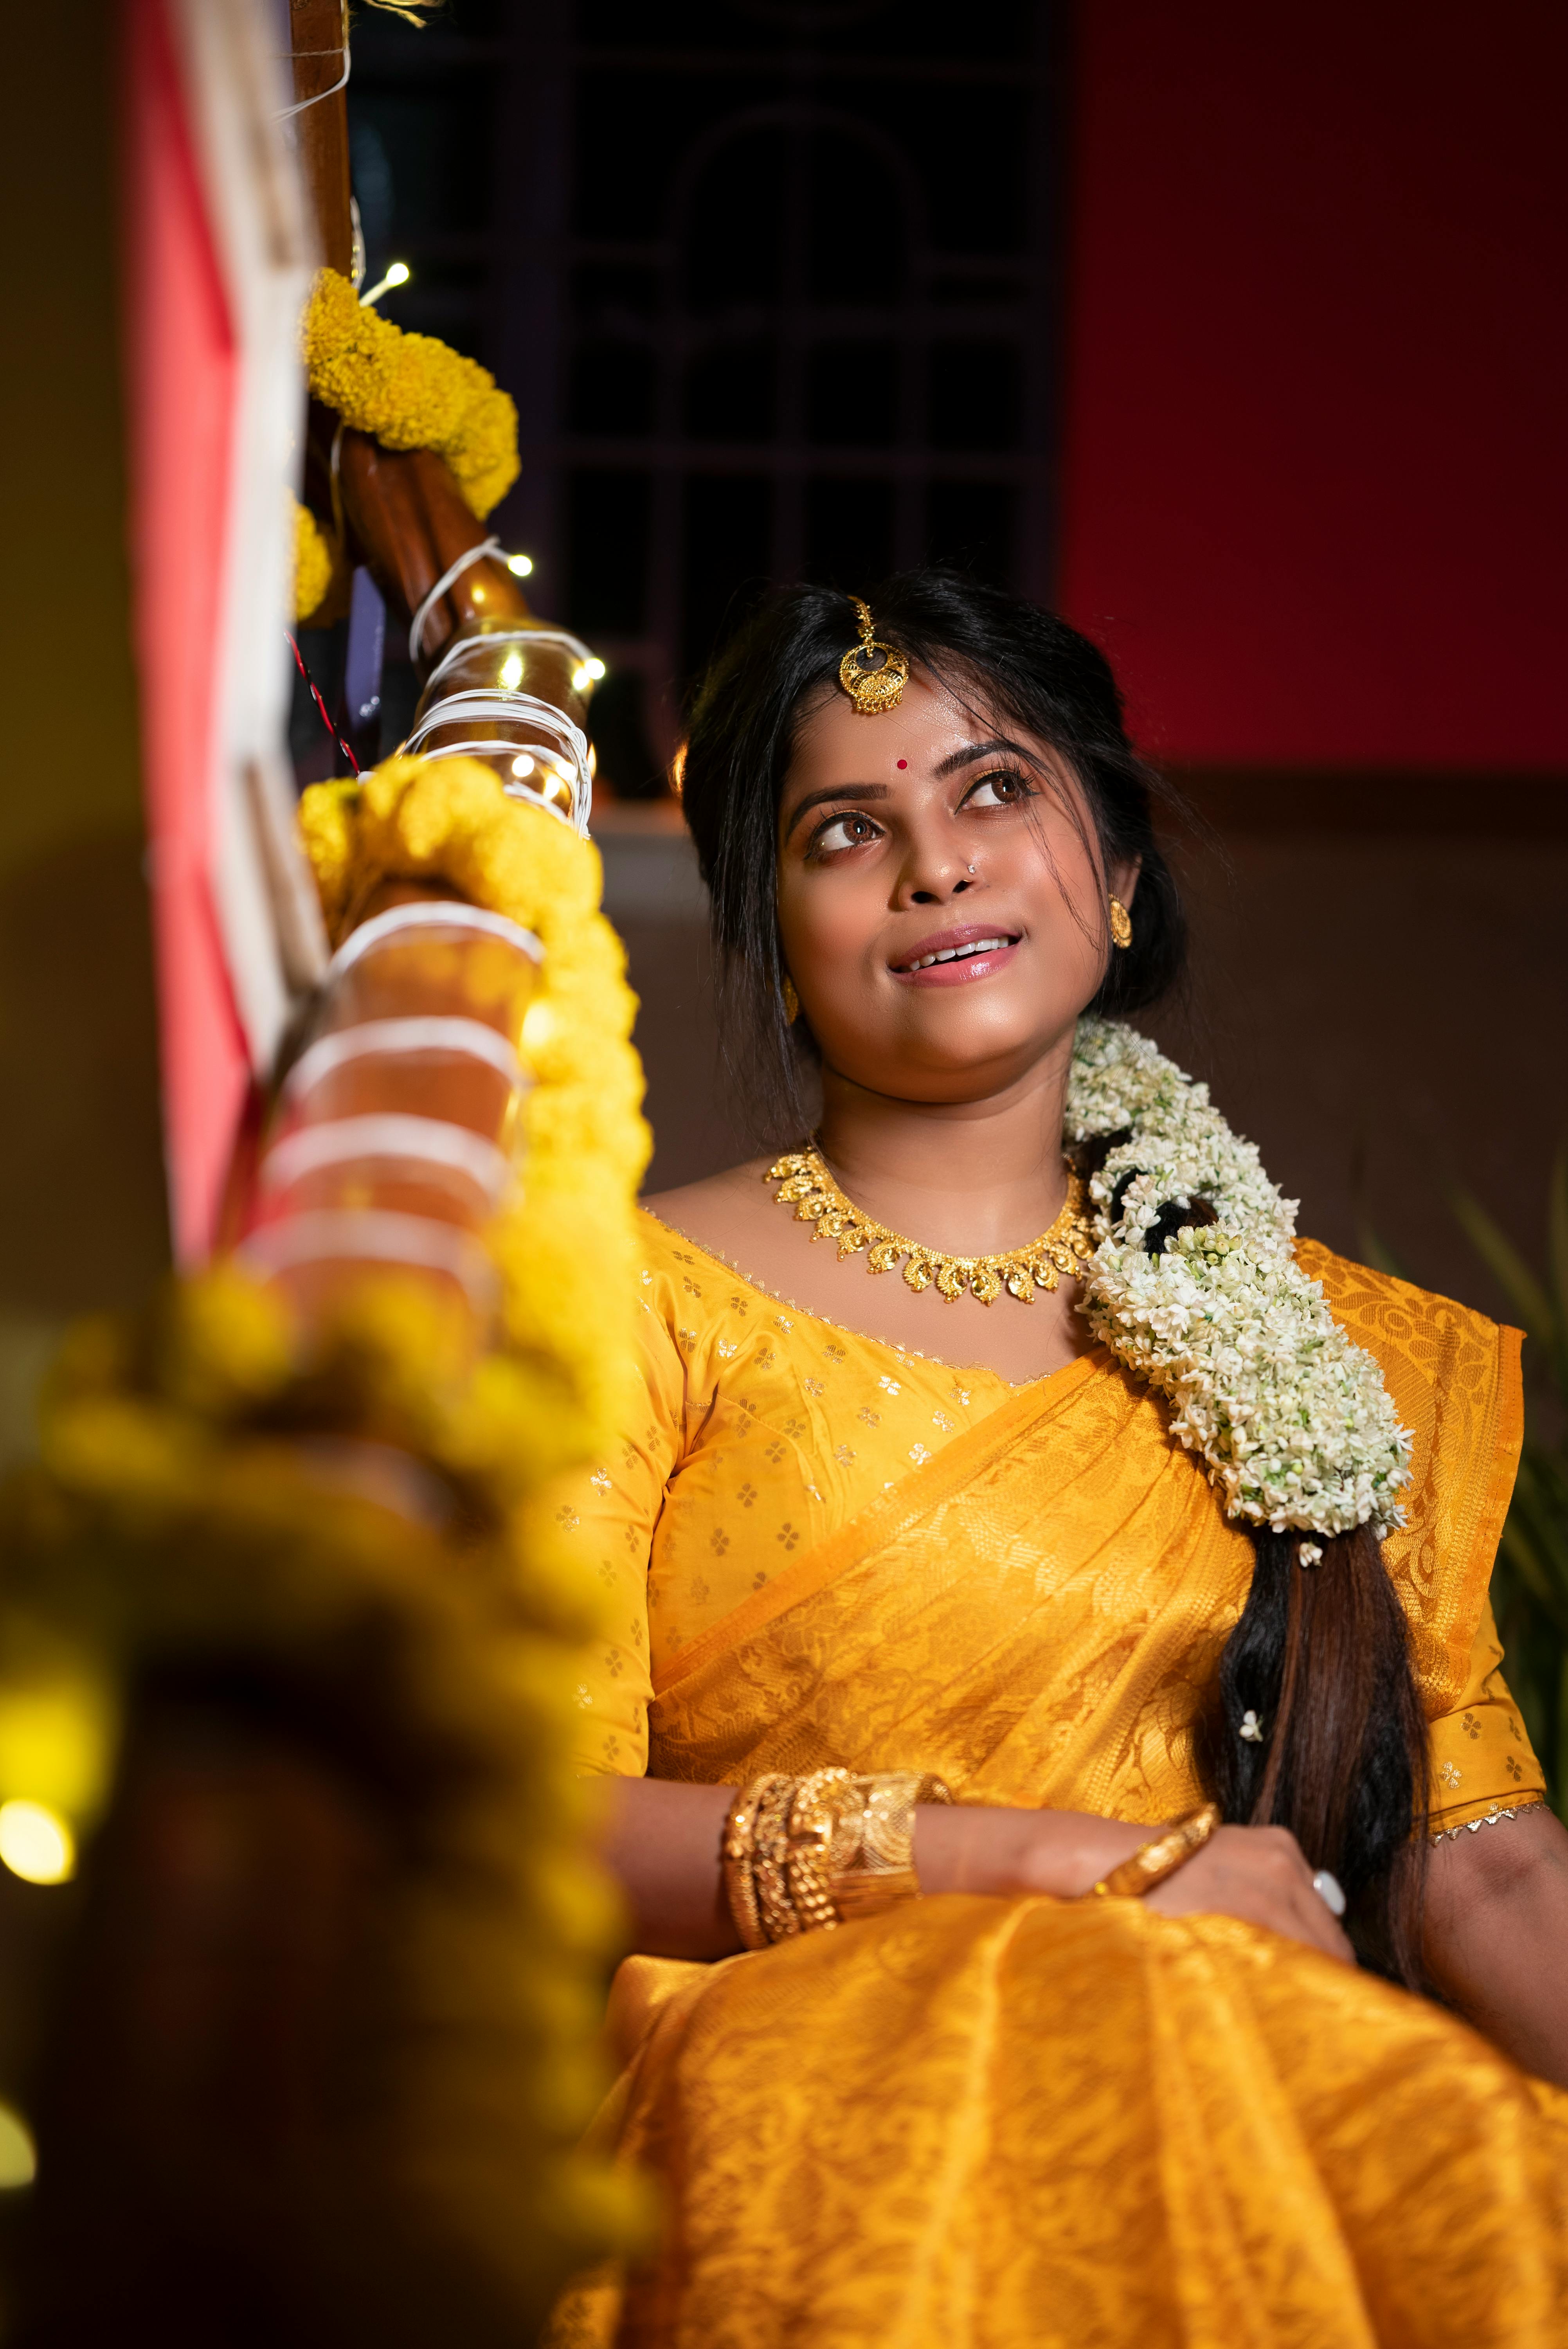 Pin by Kerthi on Tamil Wedding | Indian bride poses, Bridal photography  poses, Bride photography poses